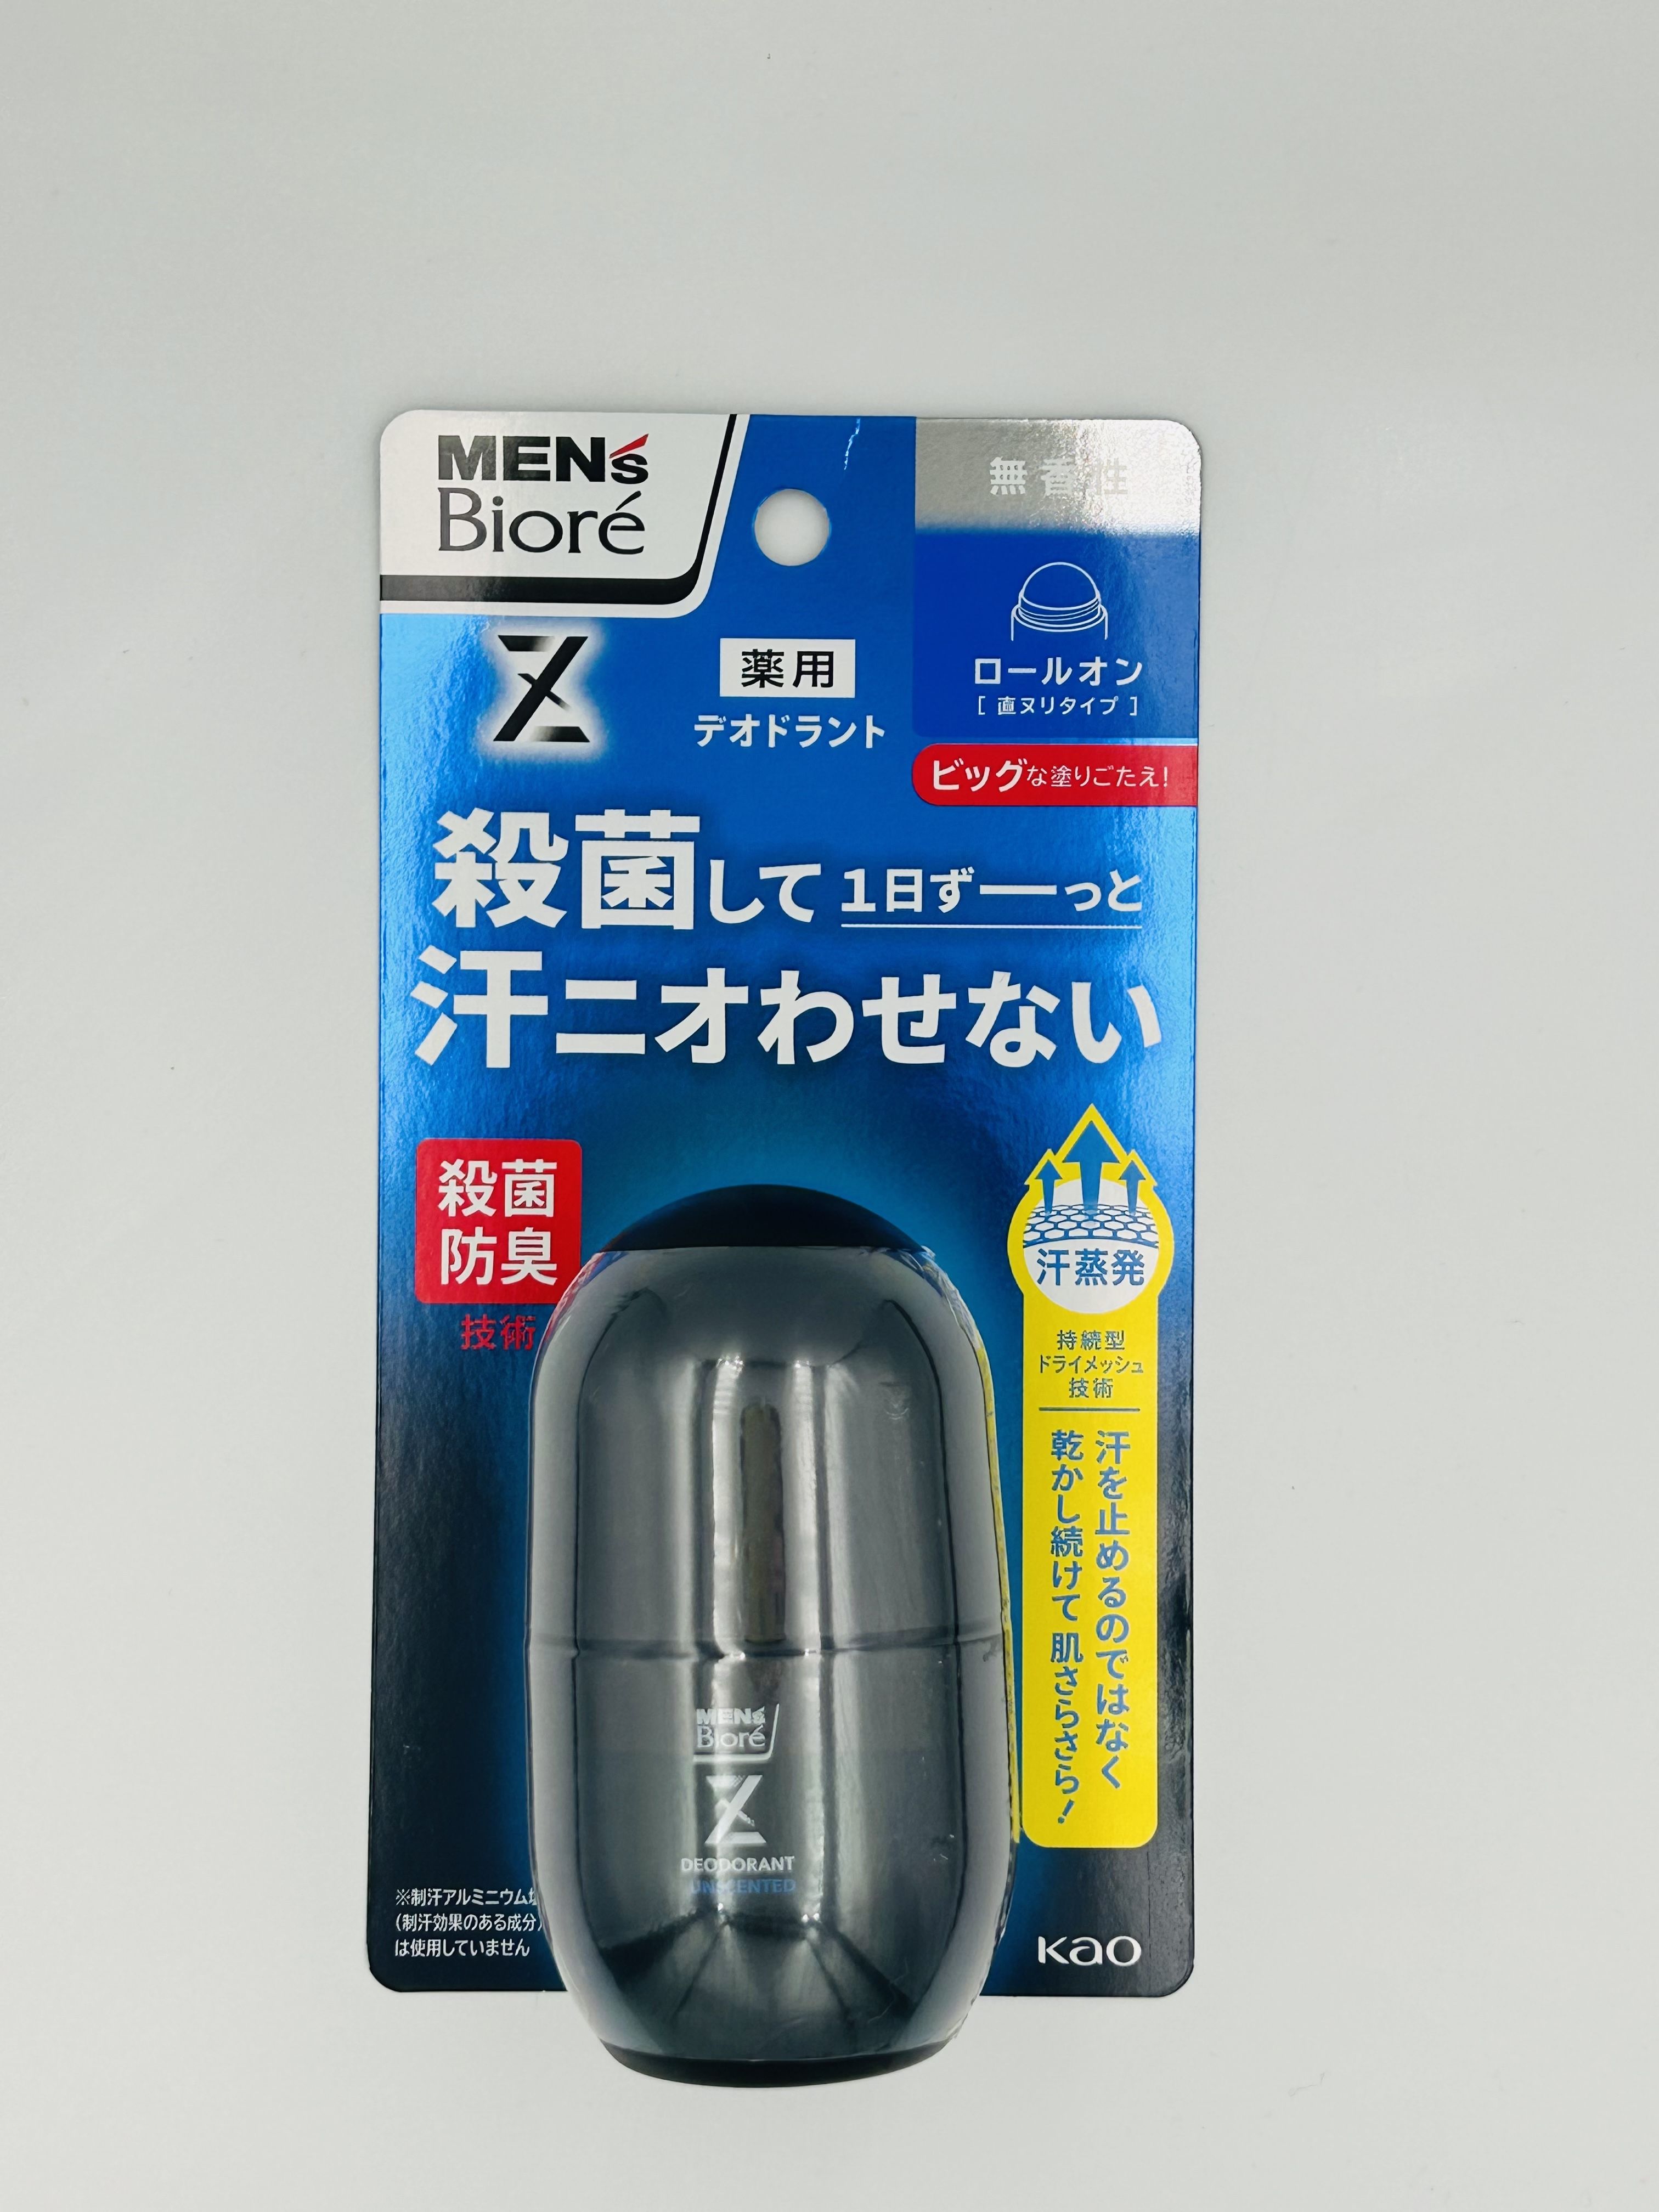 Kao Men's Biore Deodorant Z Роликовый дезодорант-антиперсперспирант мужской с антибактериальным эффектом без аромата 55 мл